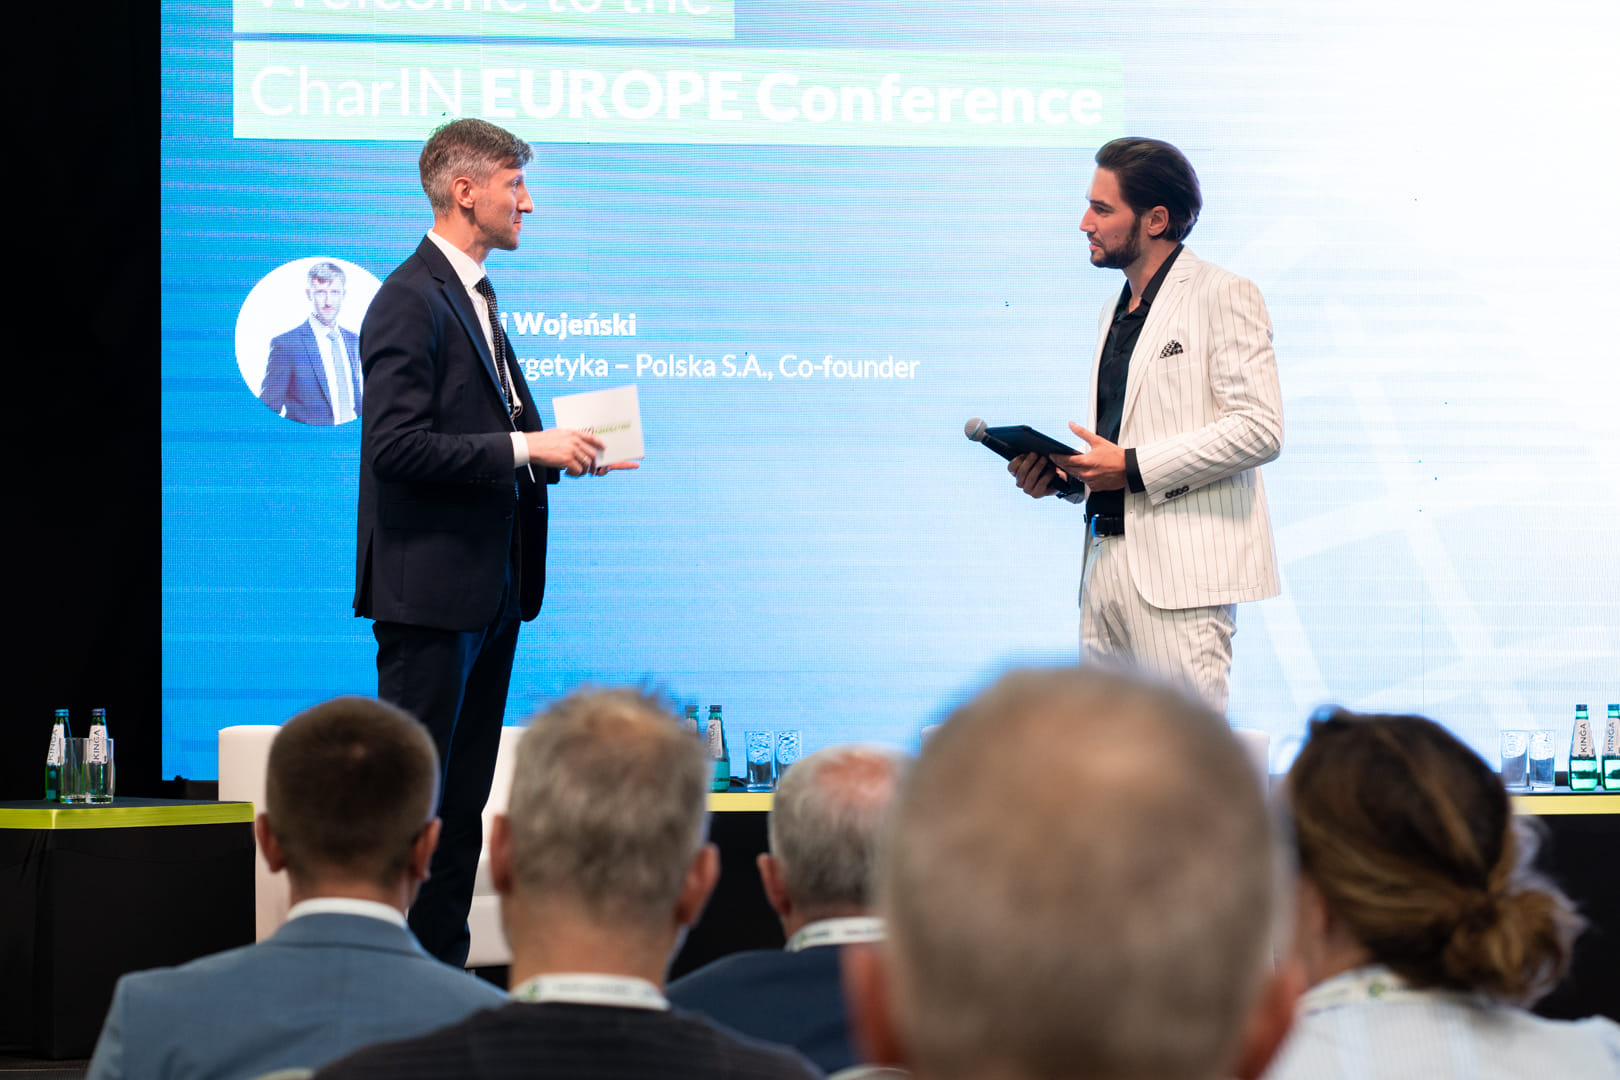 CharIN EUROPE Conference, Ekoenergetyka